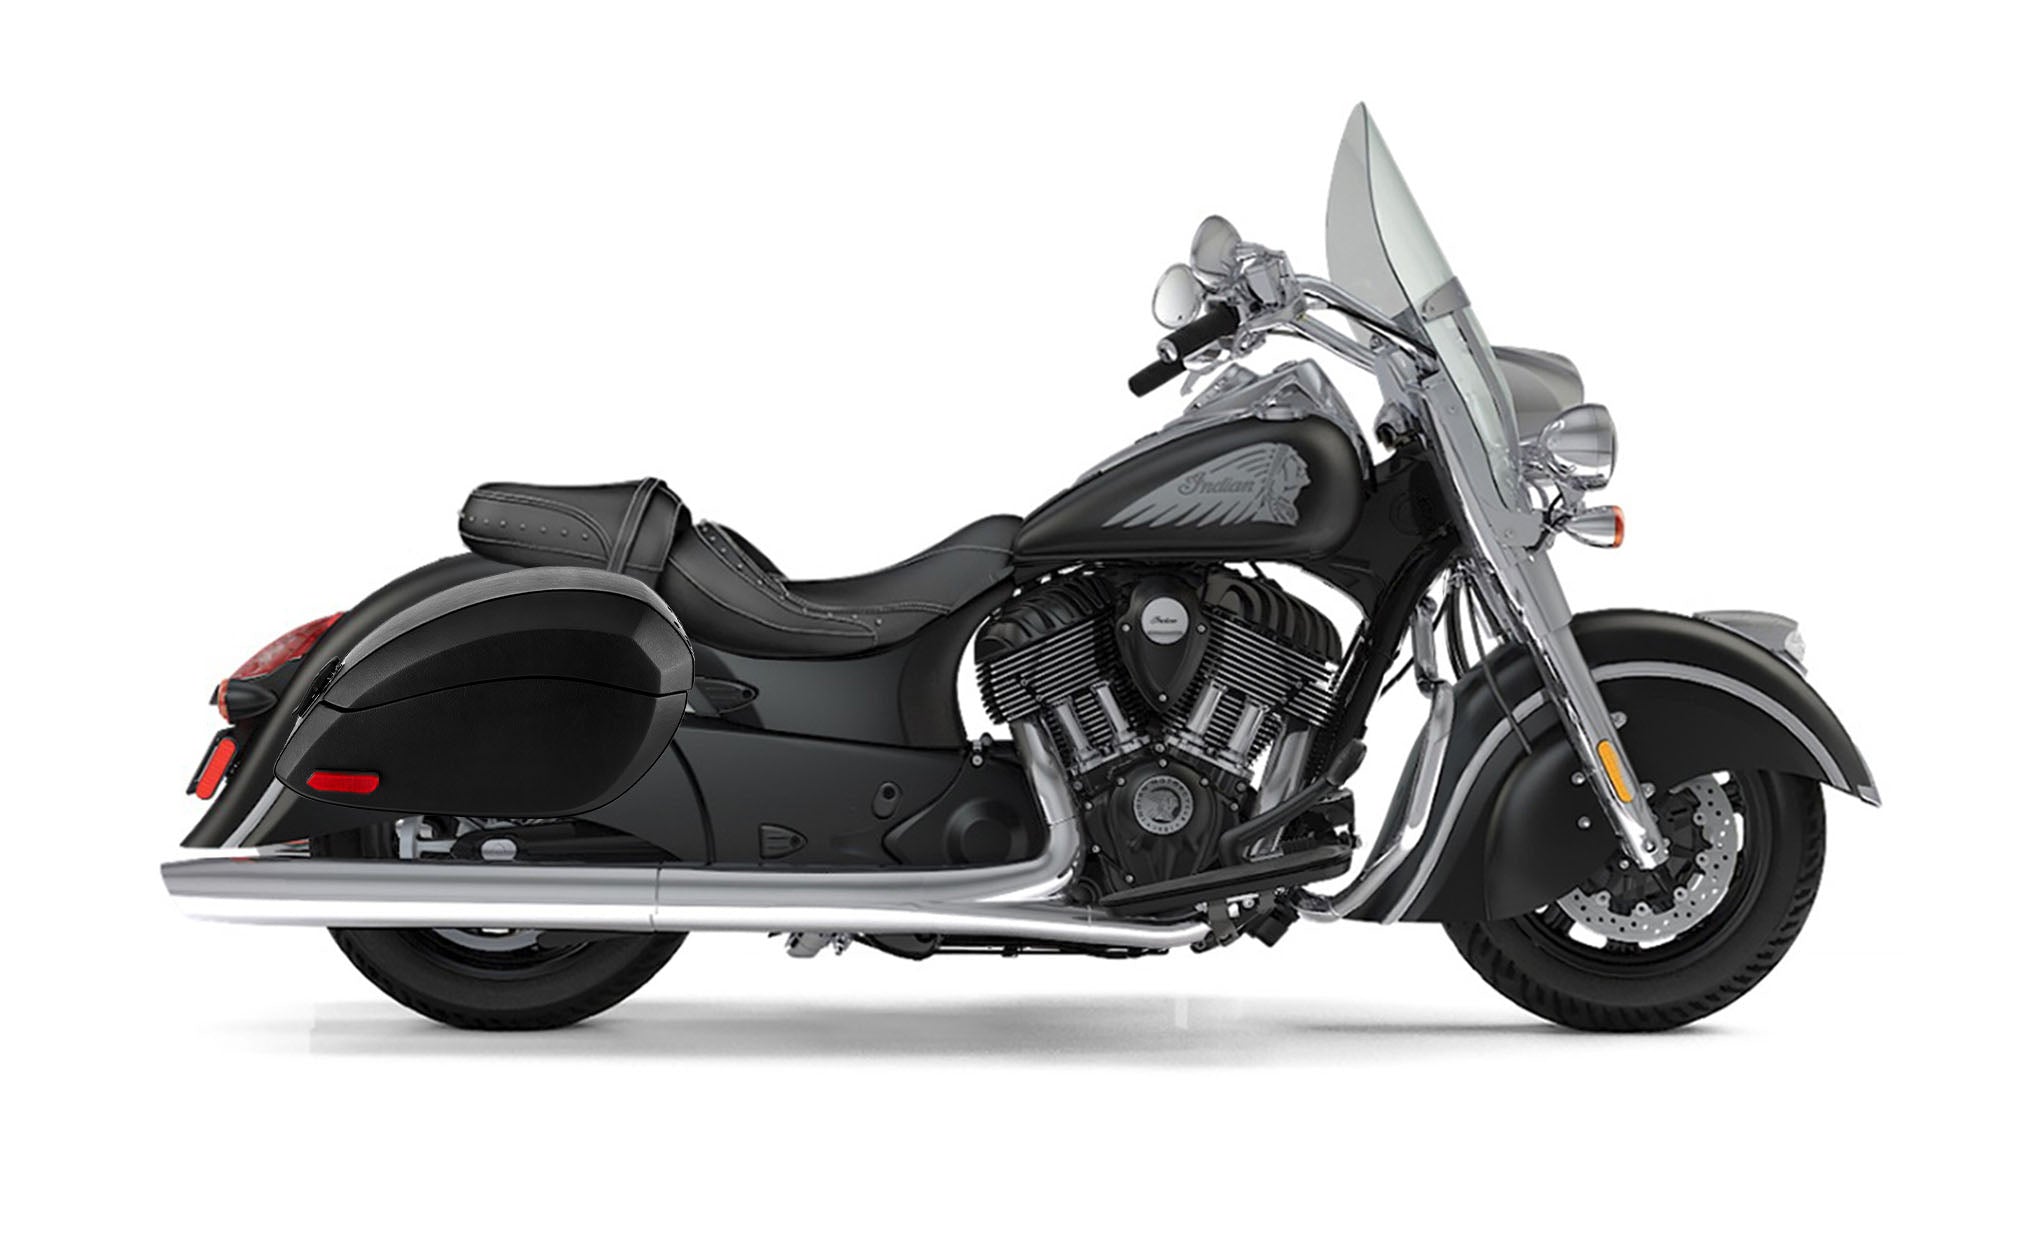 Viking Phantom Large Indian Springfield Leather Wrapped Motorcycle Hard Saddlebags on Bike Photo @expand